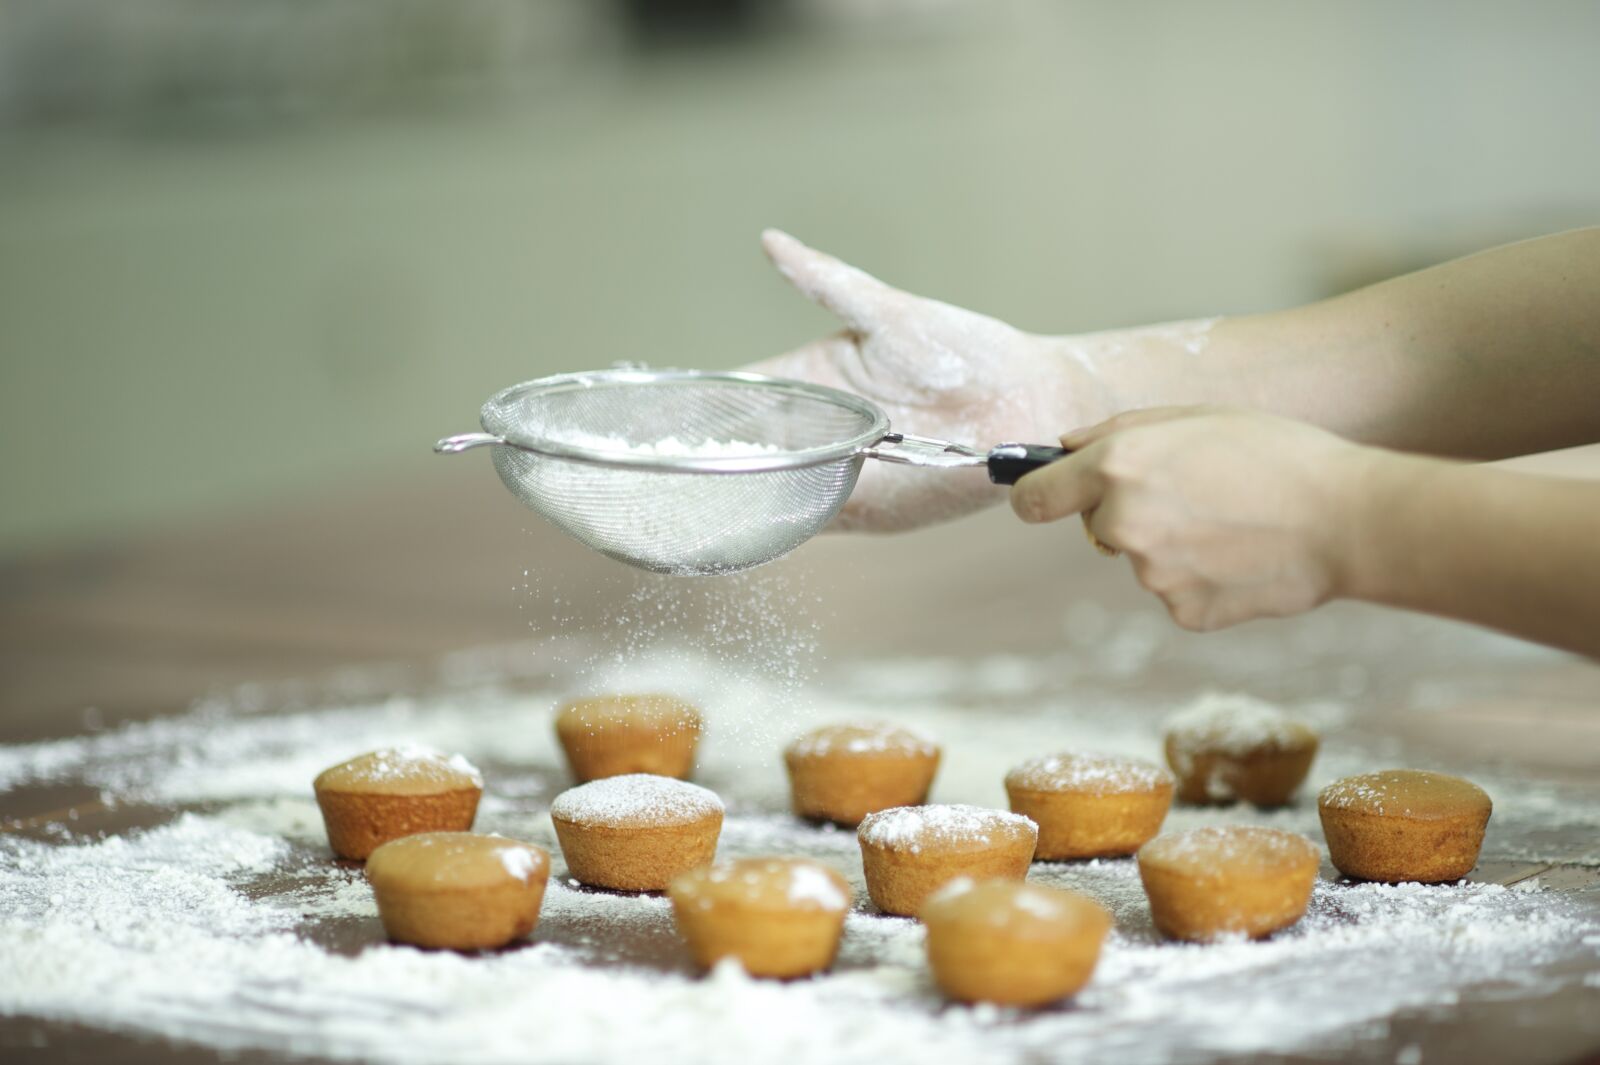 Nikon D3 sample photo. Cake, sprinkle with flour photography